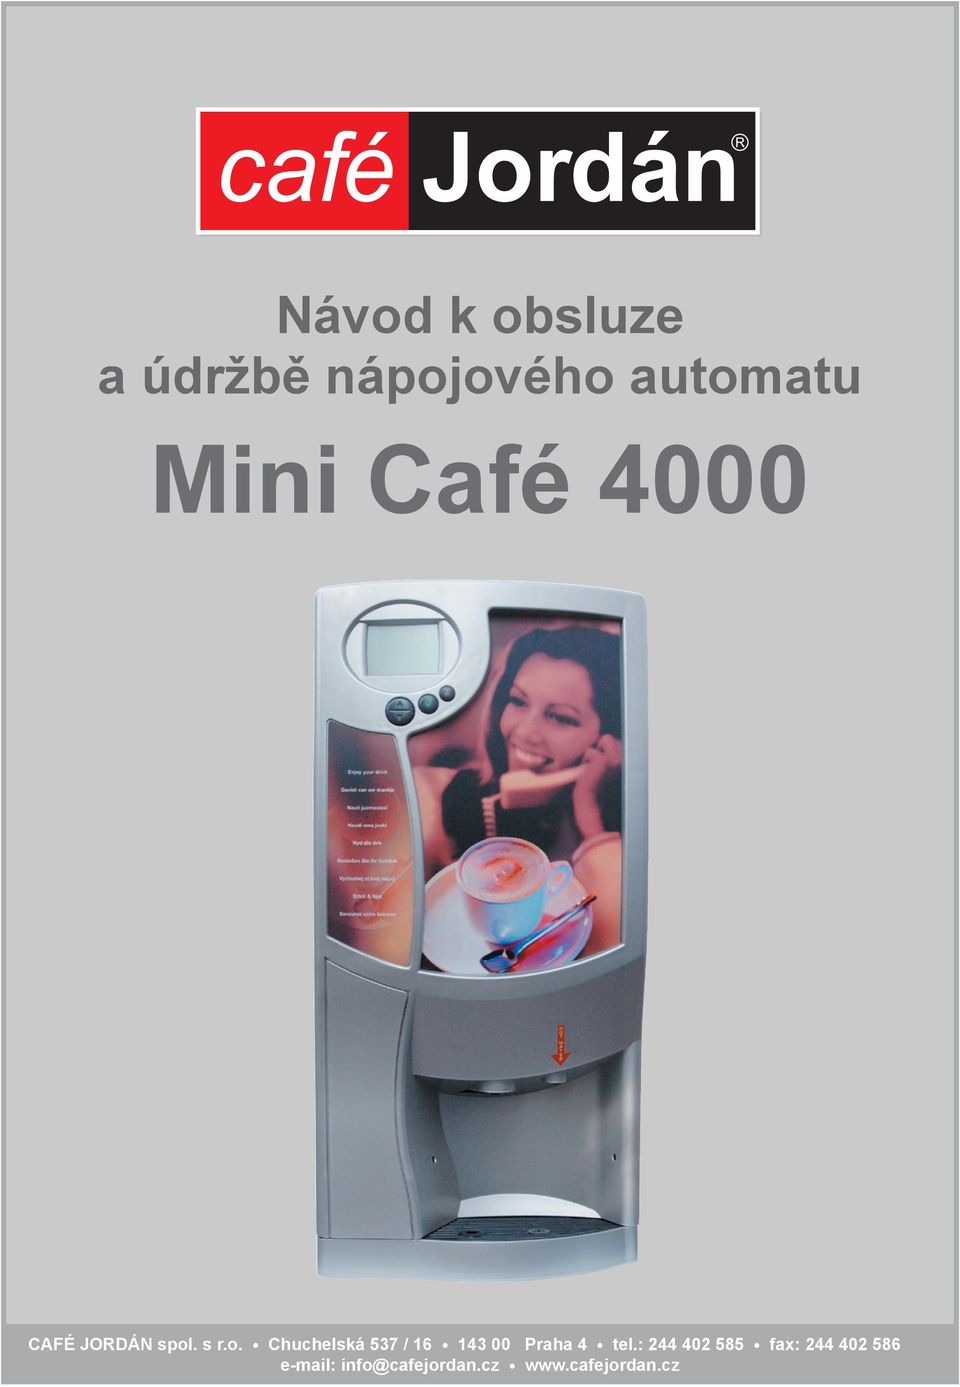 Café 4000 e-mail: